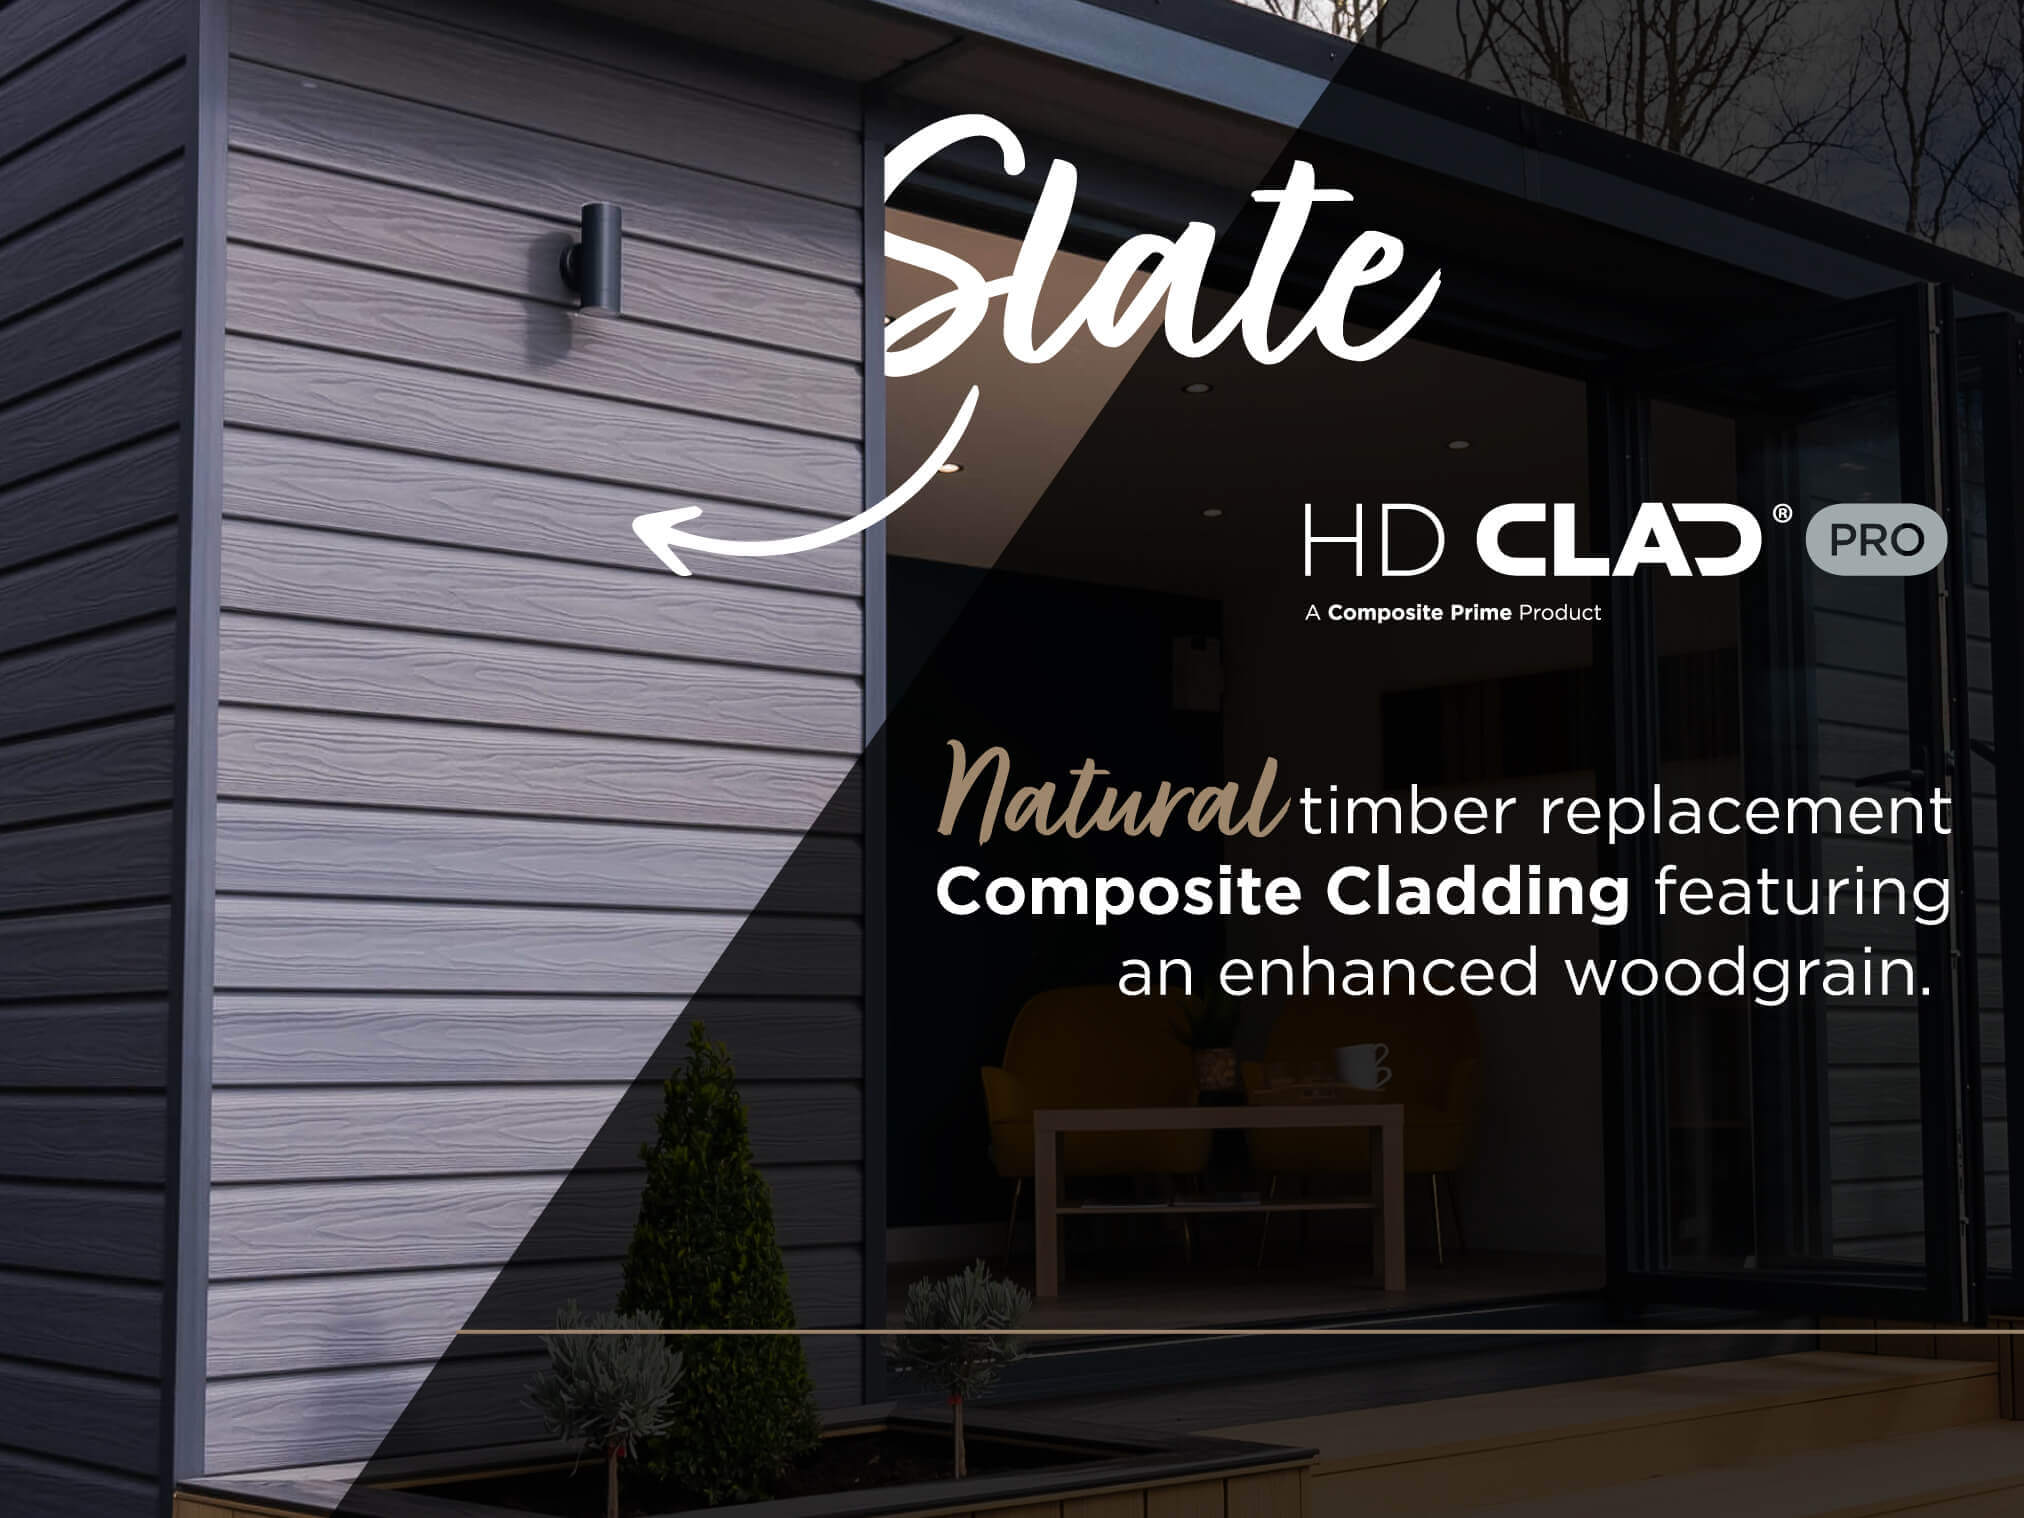 HD Clad Pro in Slate